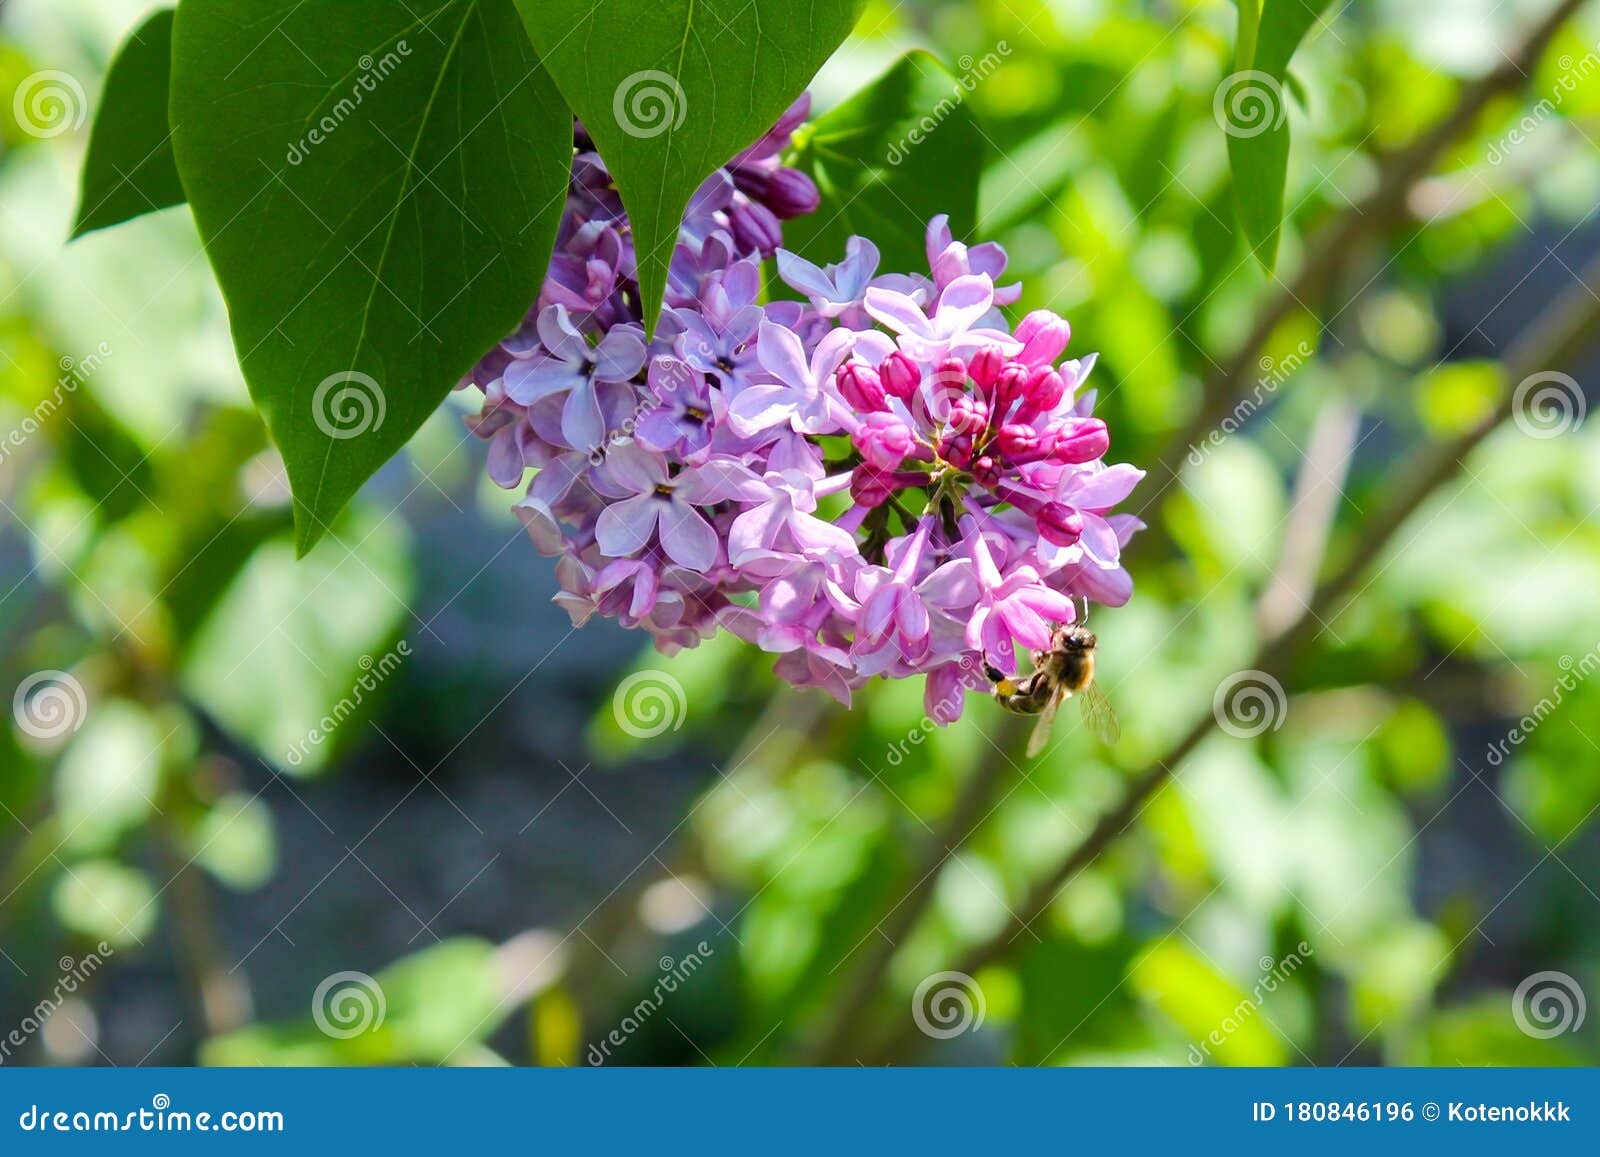 紫丁香灌木用白丁香和丁香花和蜜蜂开花库存照片 图片包括有紫丁香灌木用白丁香和丁香花和蜜蜂开花